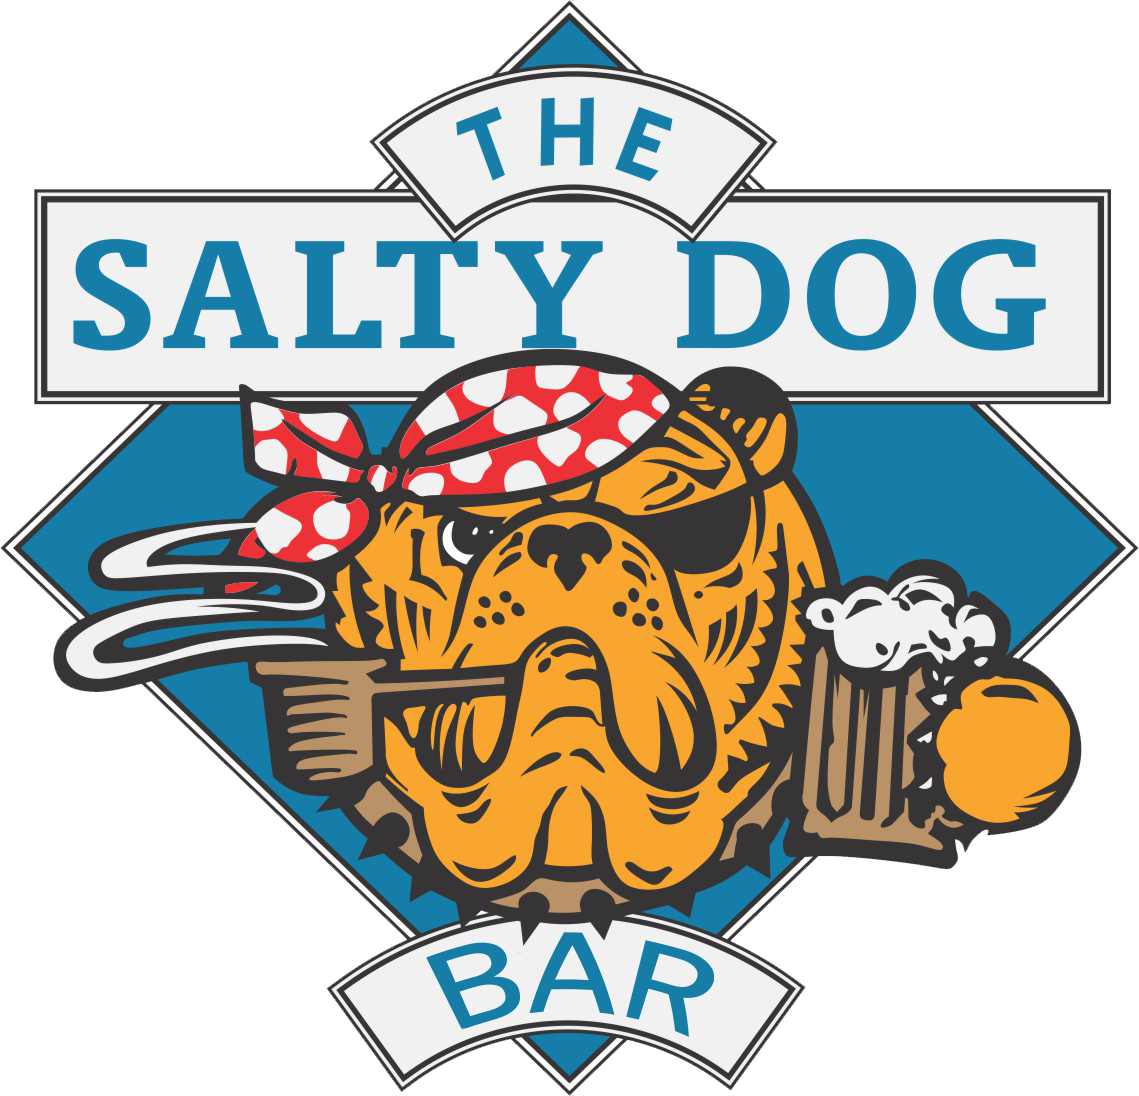 The Salty Dog Bar